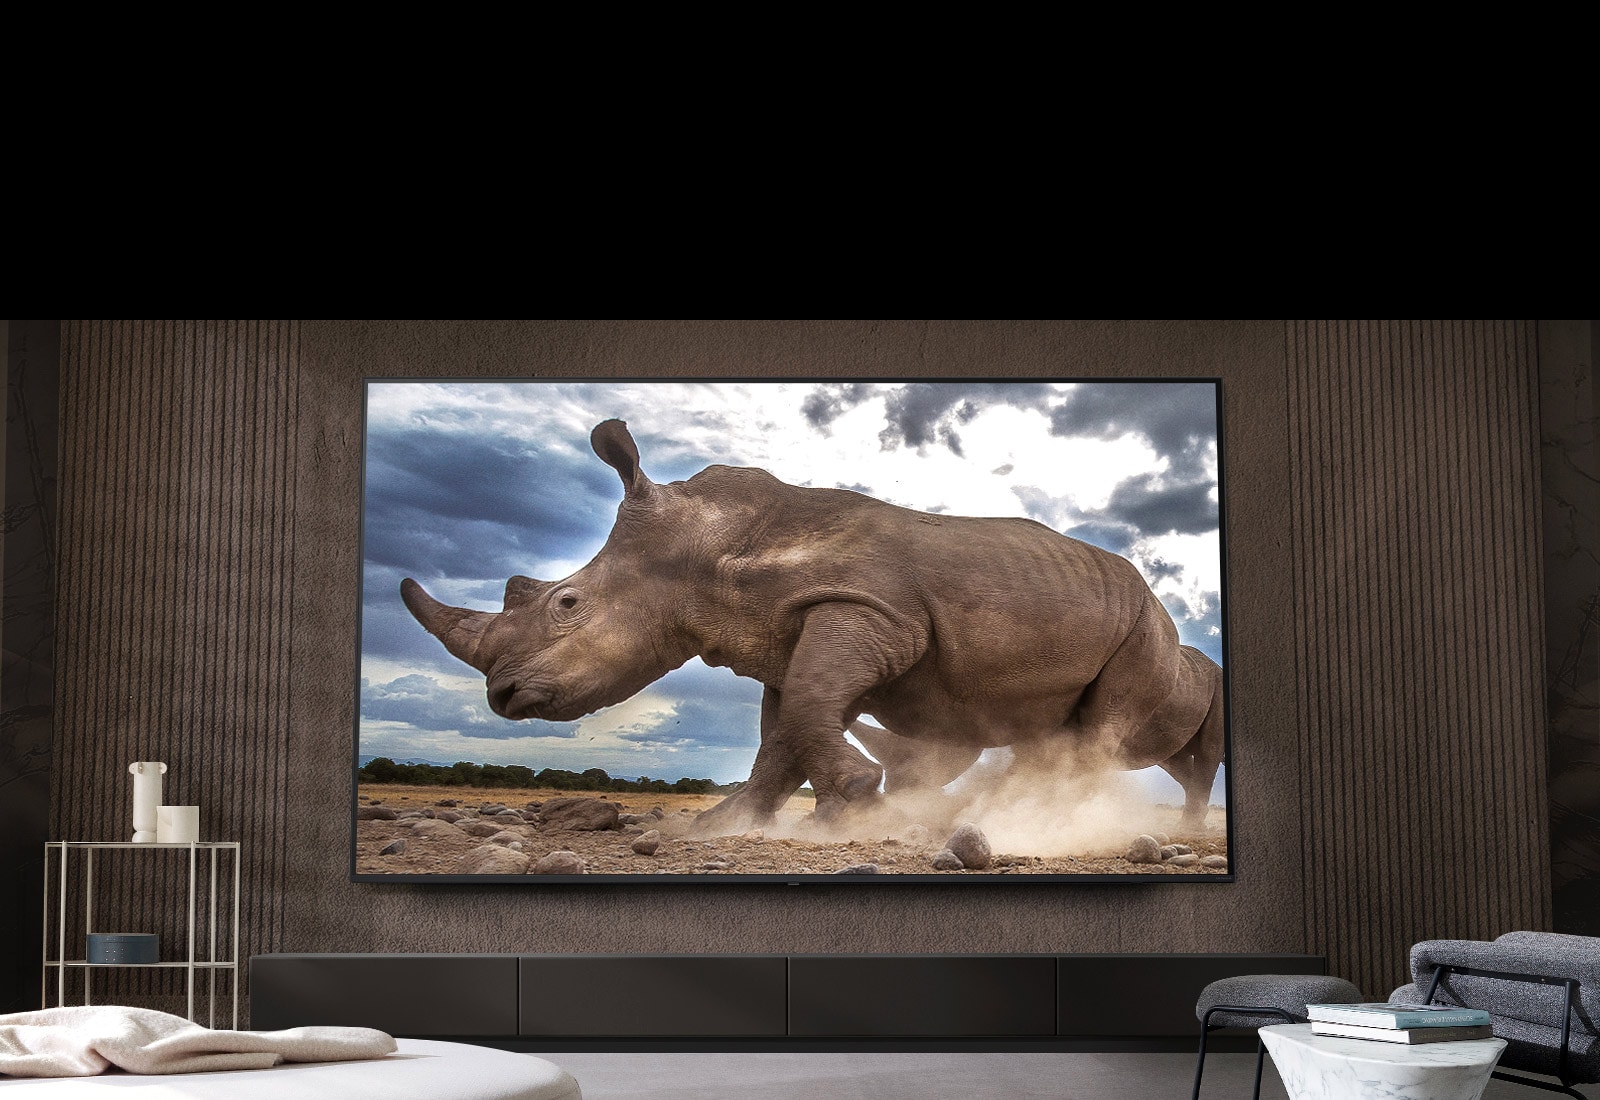 Auf einem Ultra Big LG Fernseher, der an der braunen Wand eines Wohnzimmers montiert ist, umgeben von cremefarbenen modularen Möbeln, wird ein Nashorn in einer Safari-Umgebung gezeigt.